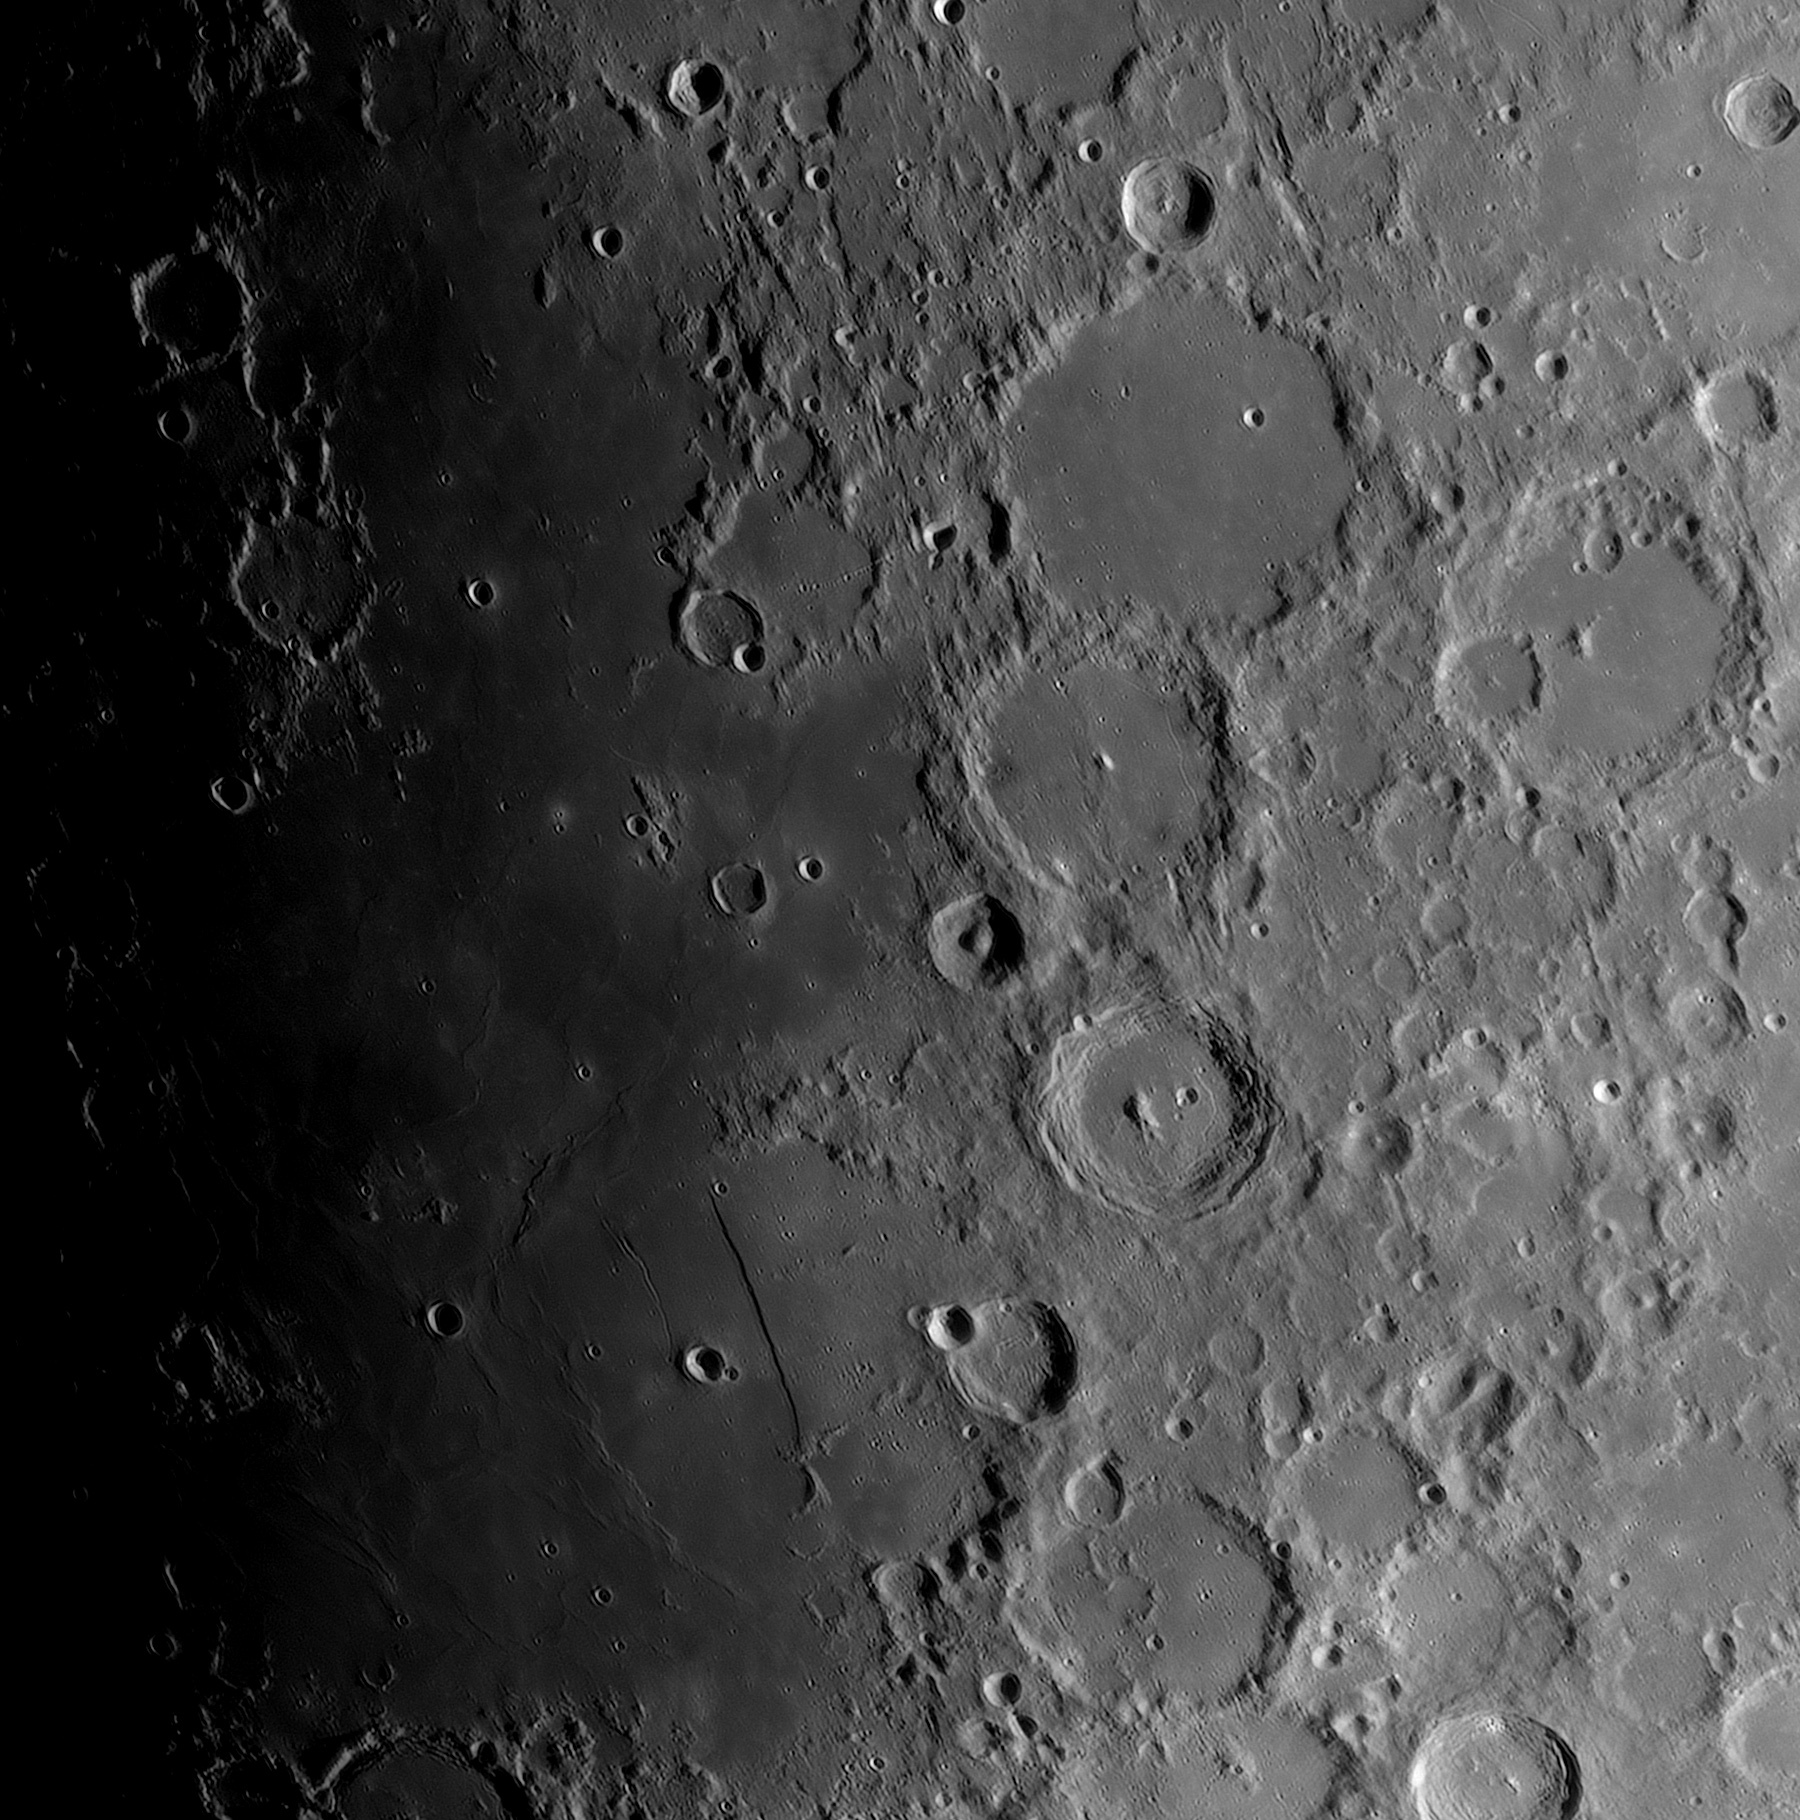 Lune-20220111_Mosa_PAA_ba-AS2.jpg.f5c434a630f6ac51493df144f1a00d6c.jpg